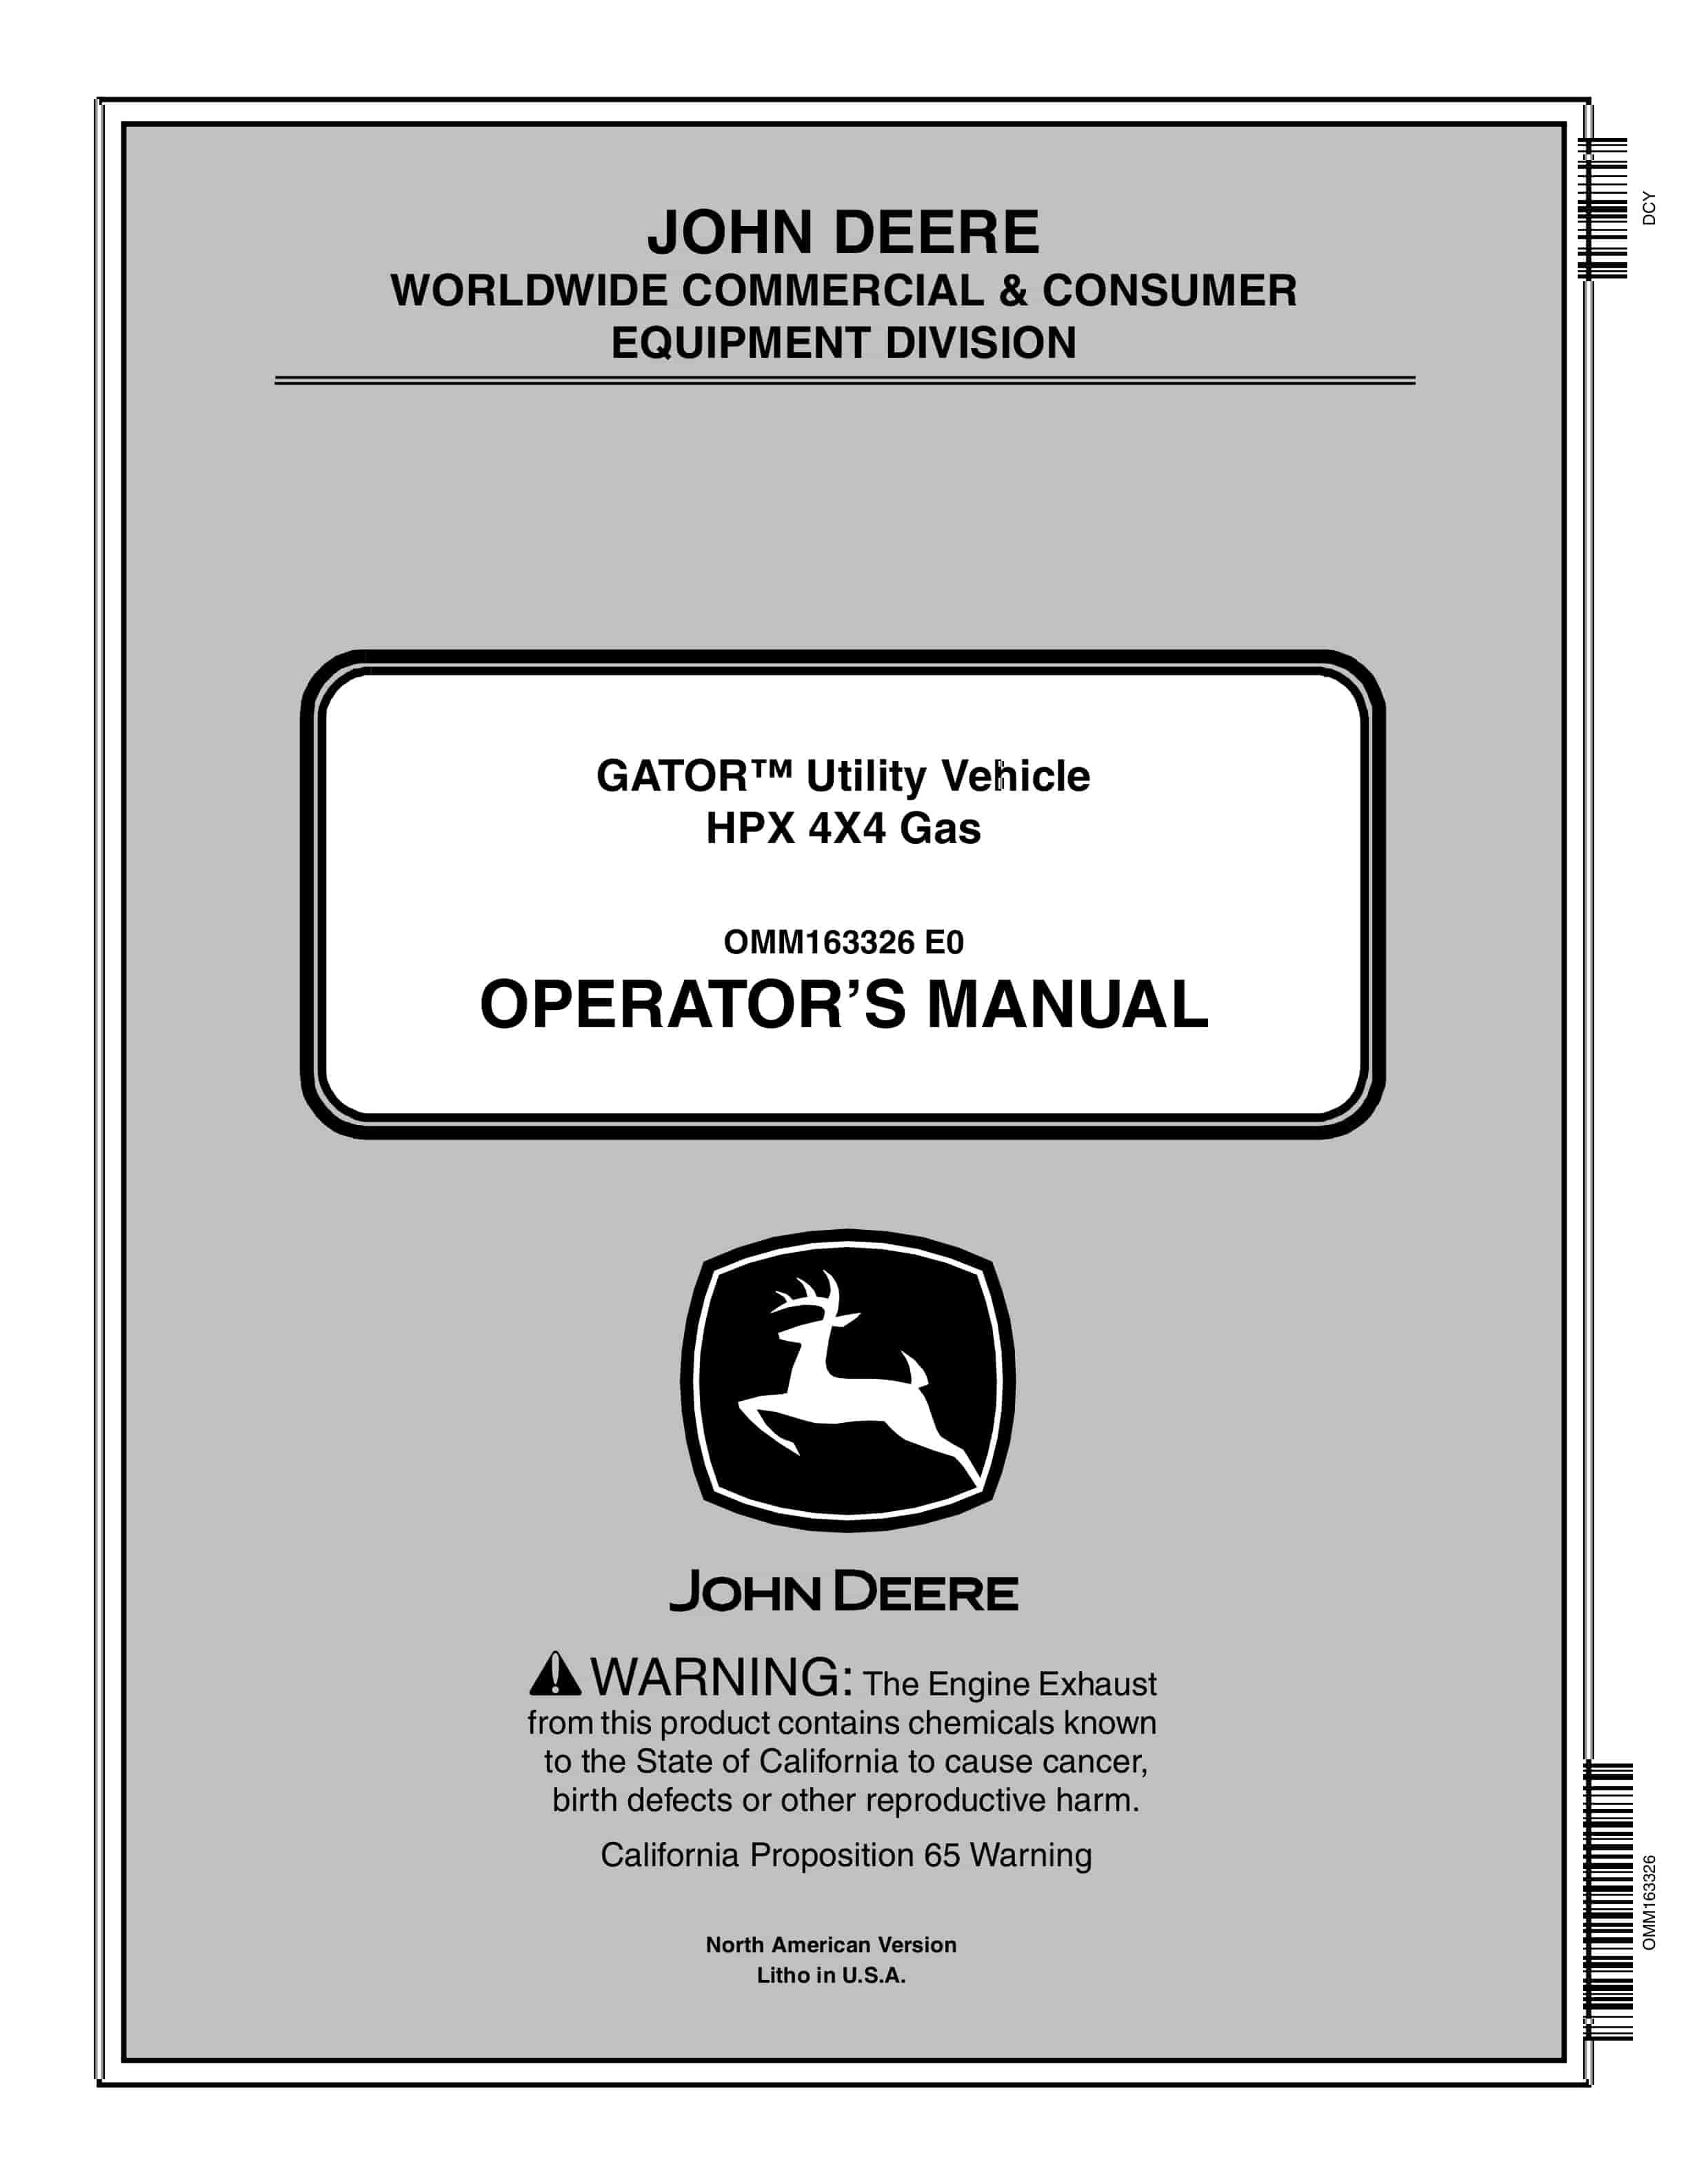 John Deere HPX 4X4 Diesel GATOR Utility Vehicles Operator Manual OMM163326 1